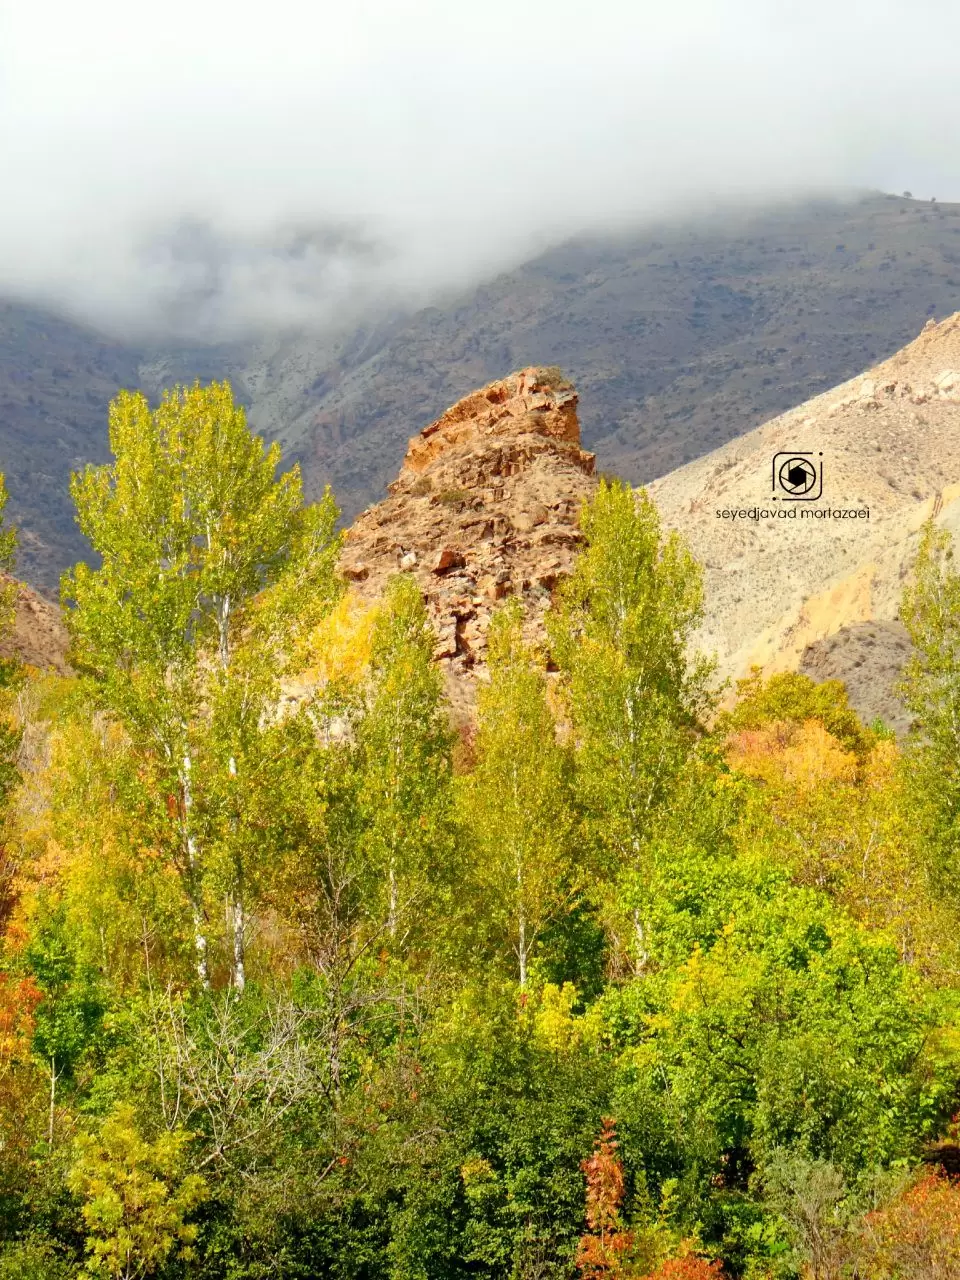 عکسی زیبا از طبیعت پاییزی روستای ارزیل بخش خاروانا شهرستان ورزقان / عکس از سید حواد مرتضایی